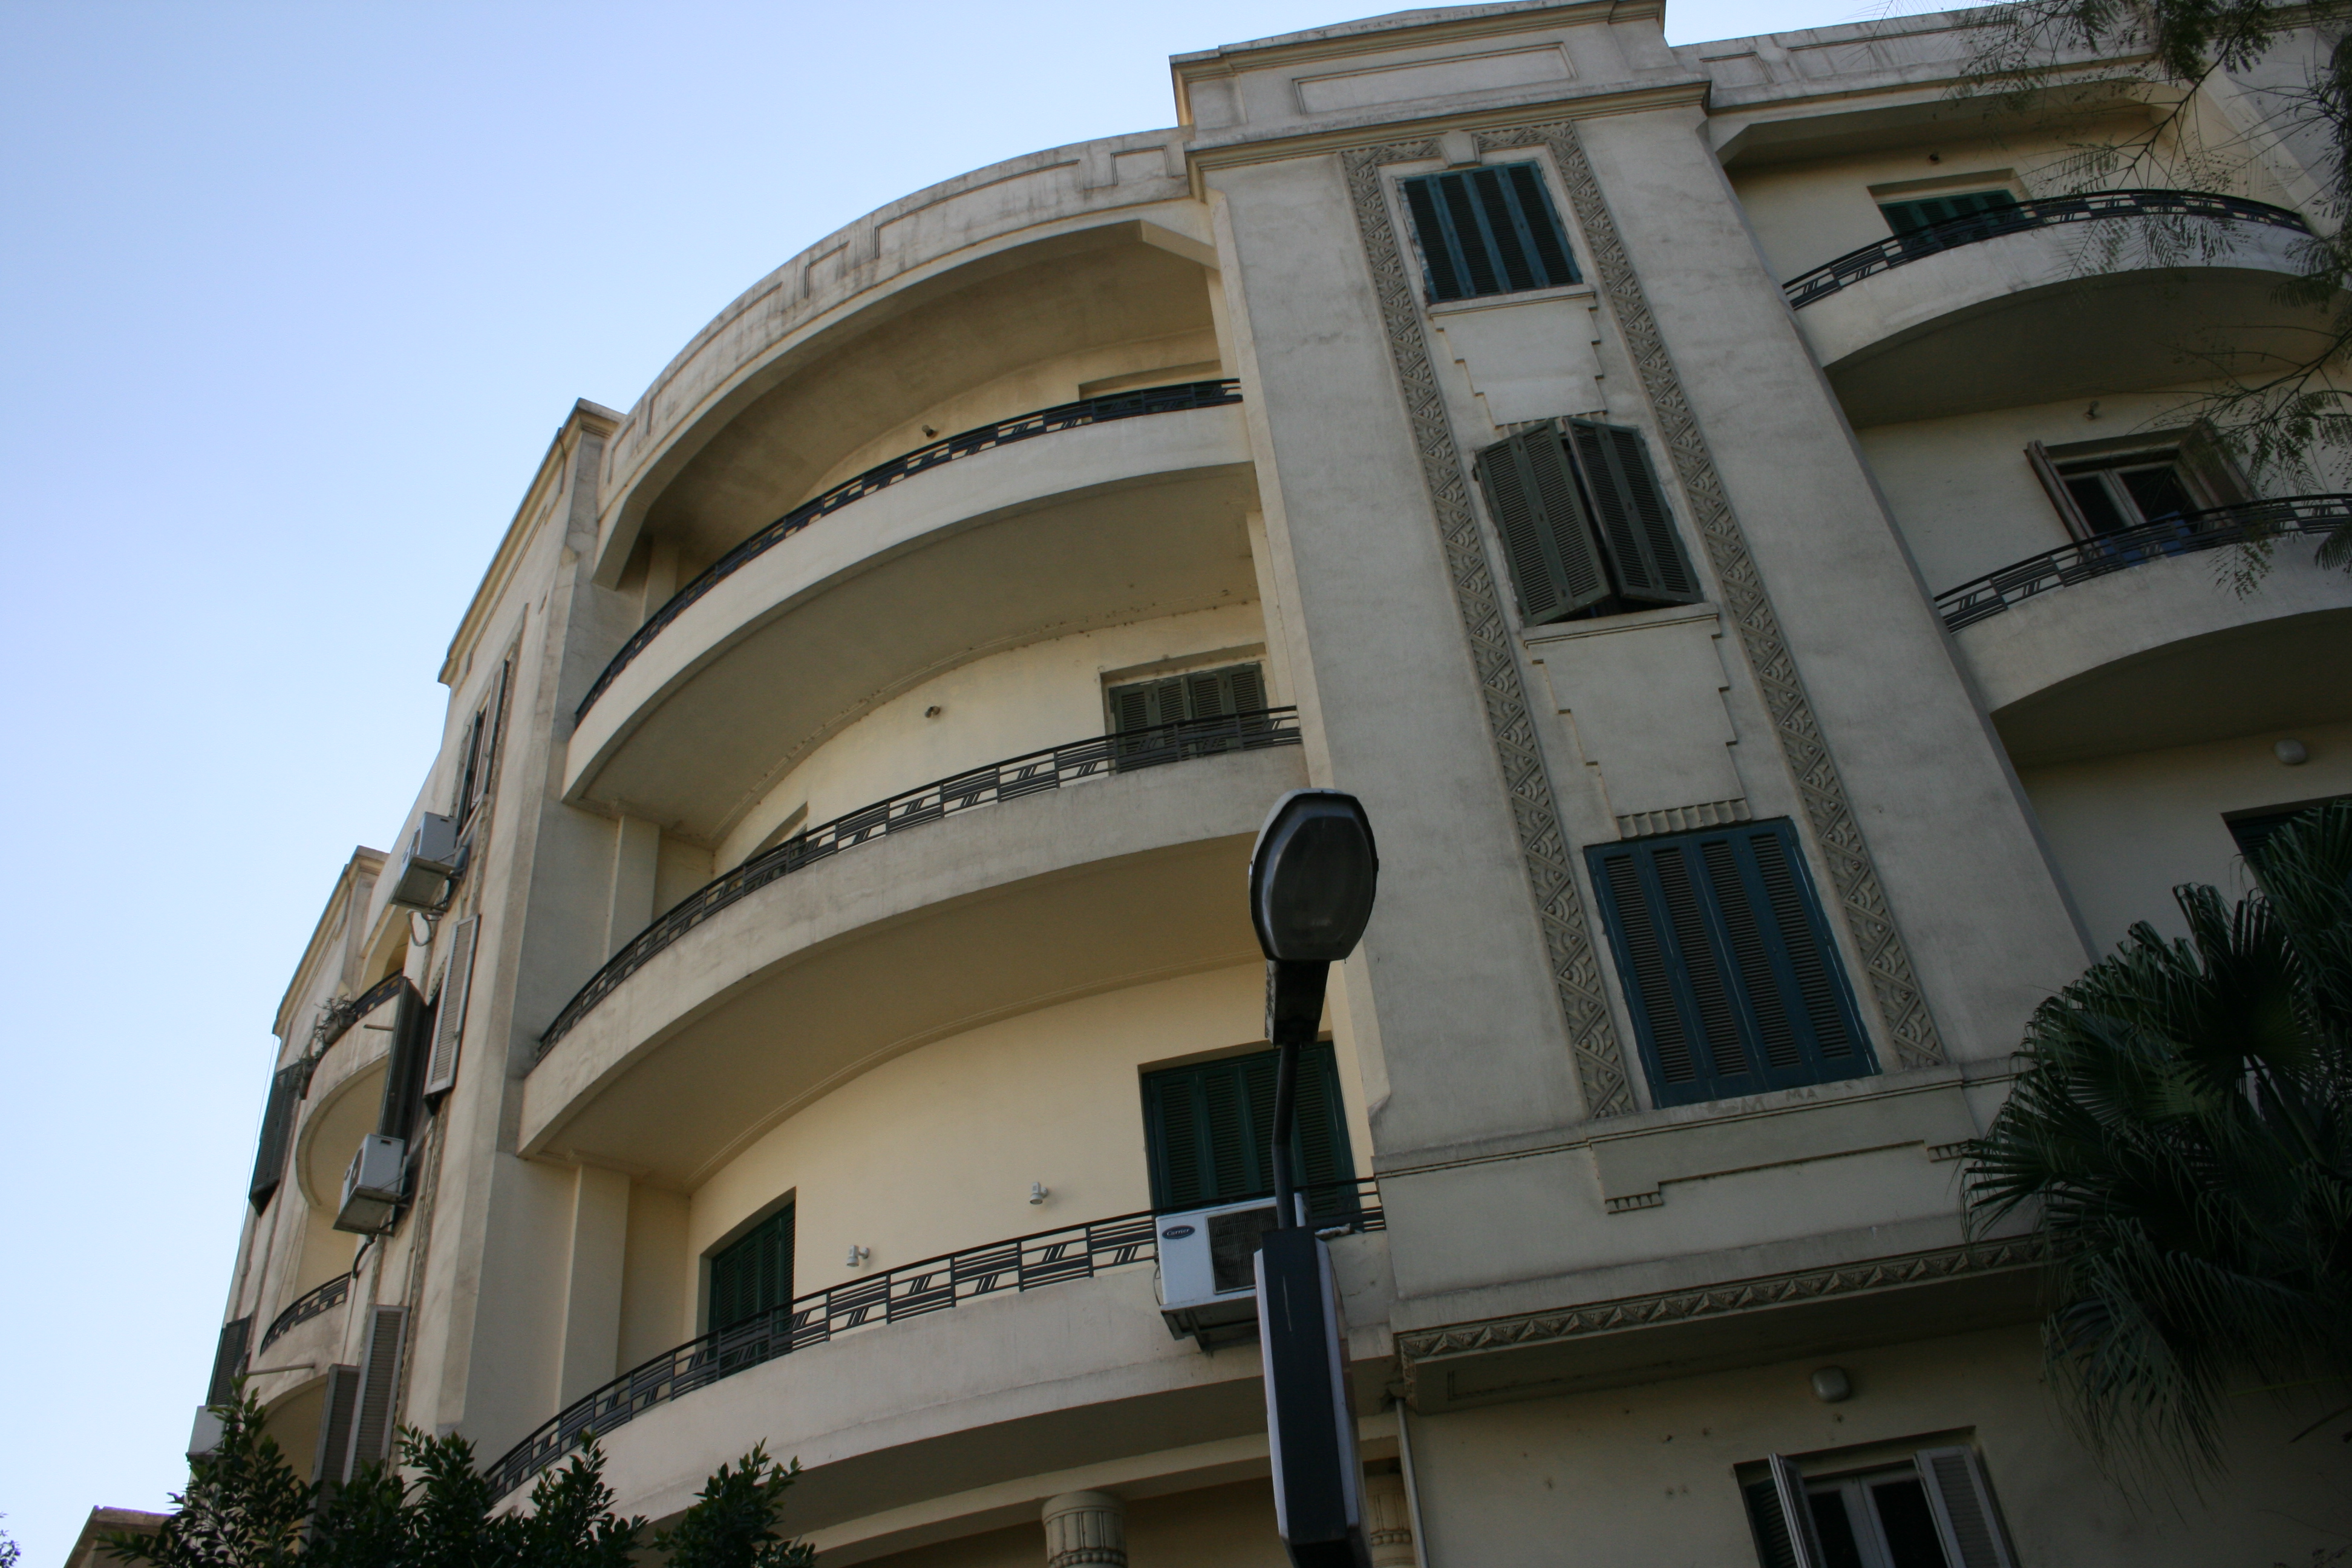 Main facade with circular interior balconies 